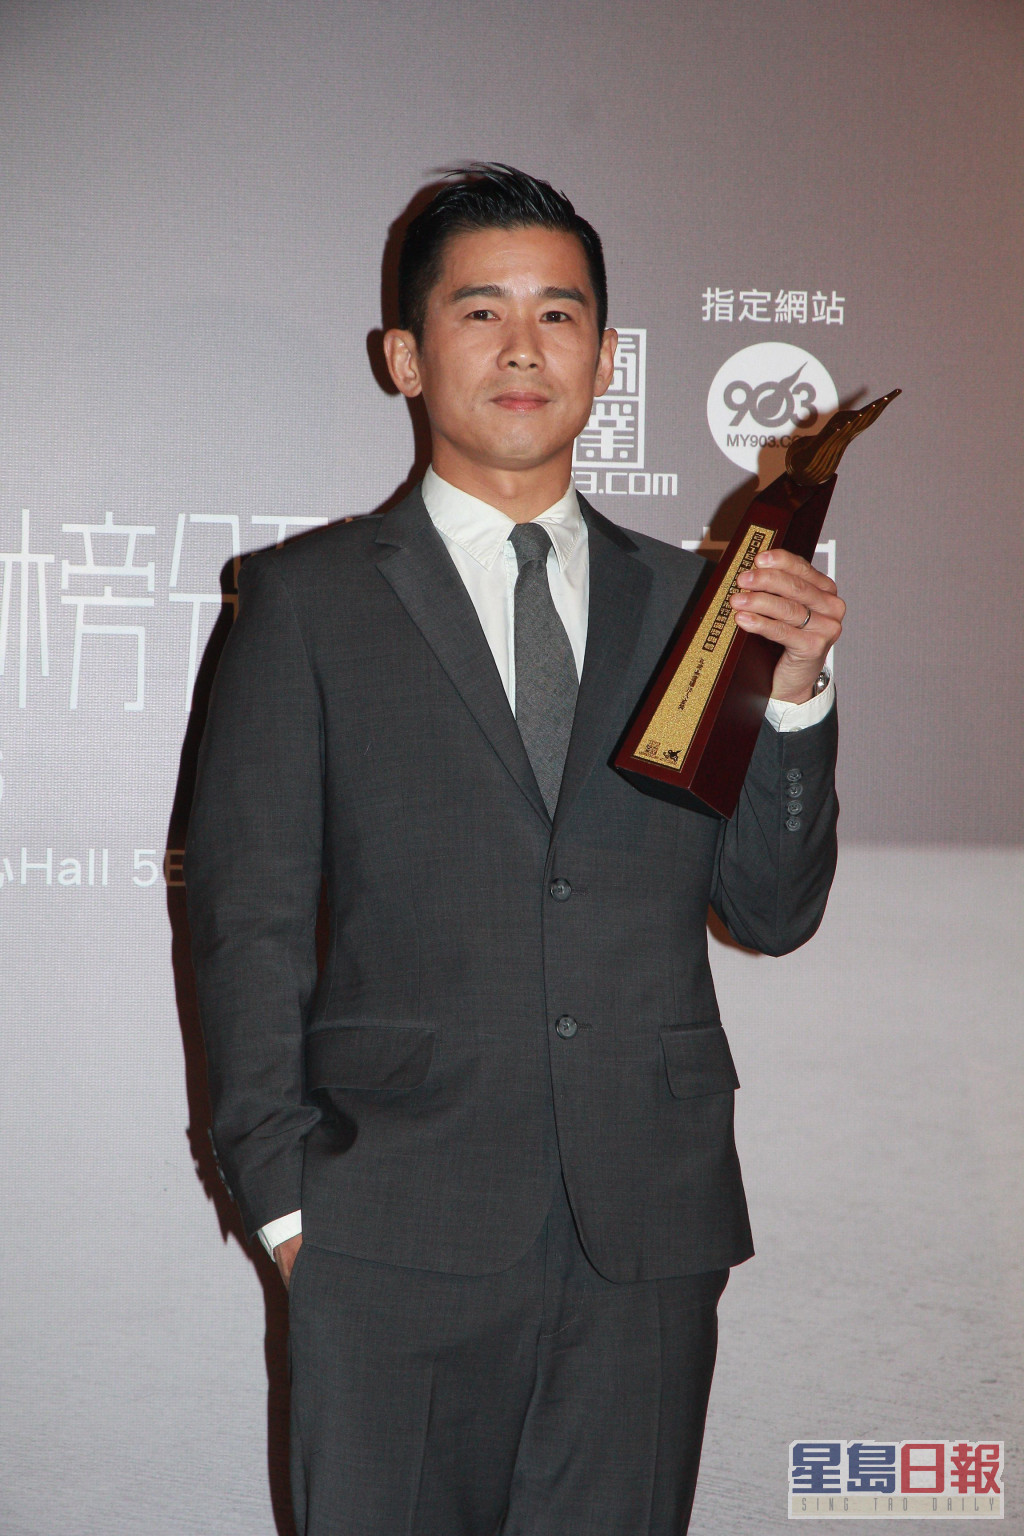 林海峰曾获「叱咤乐坛唱作人金奖」。